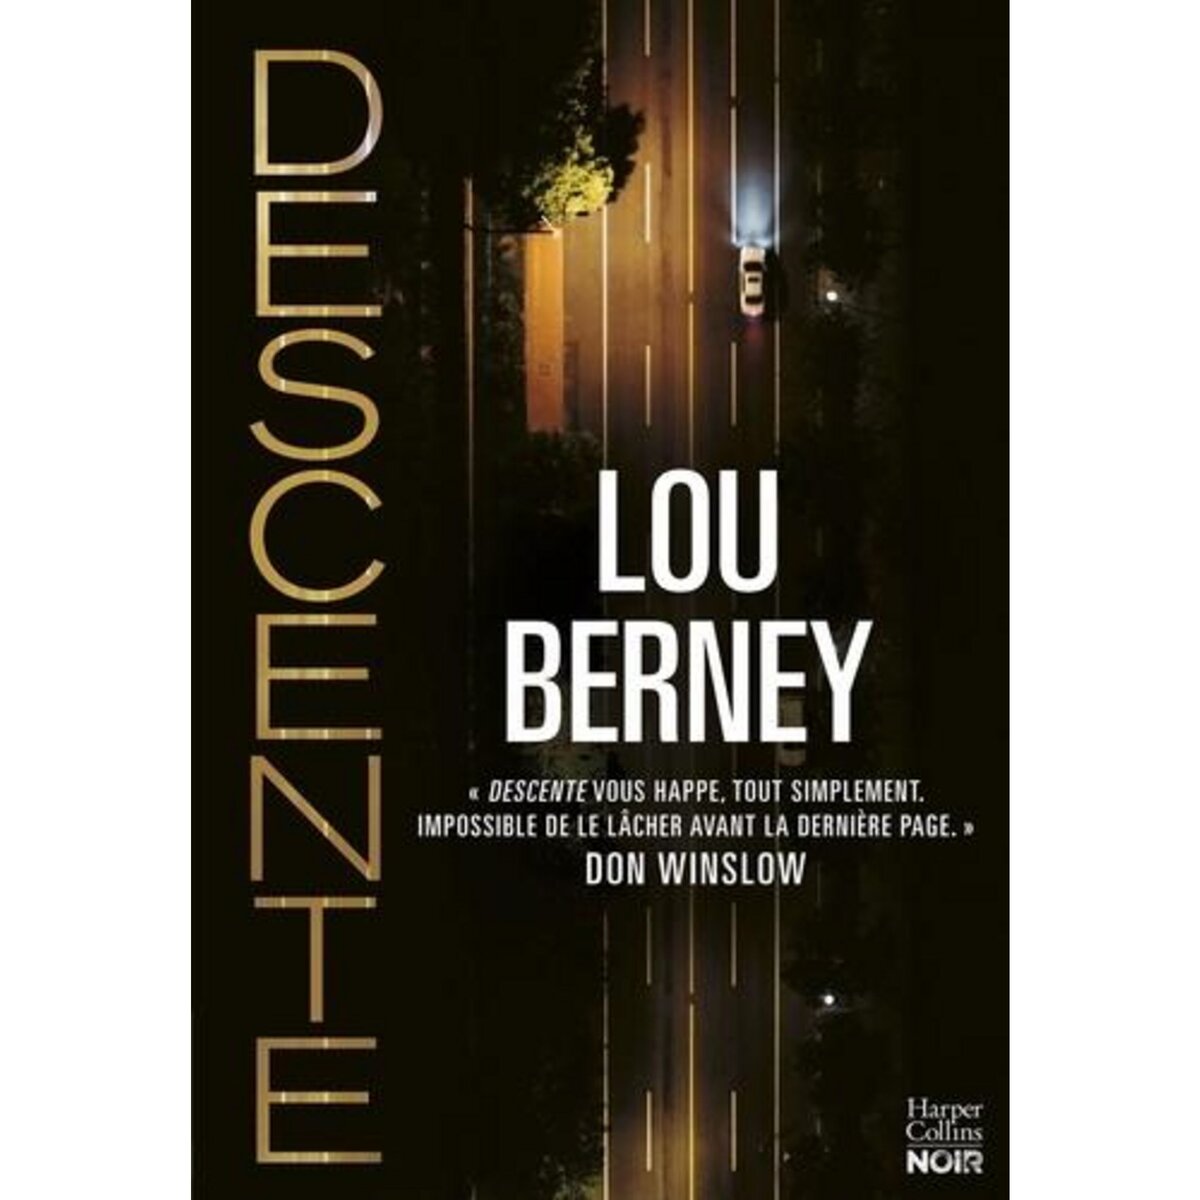  DESCENTE, Berney Lou